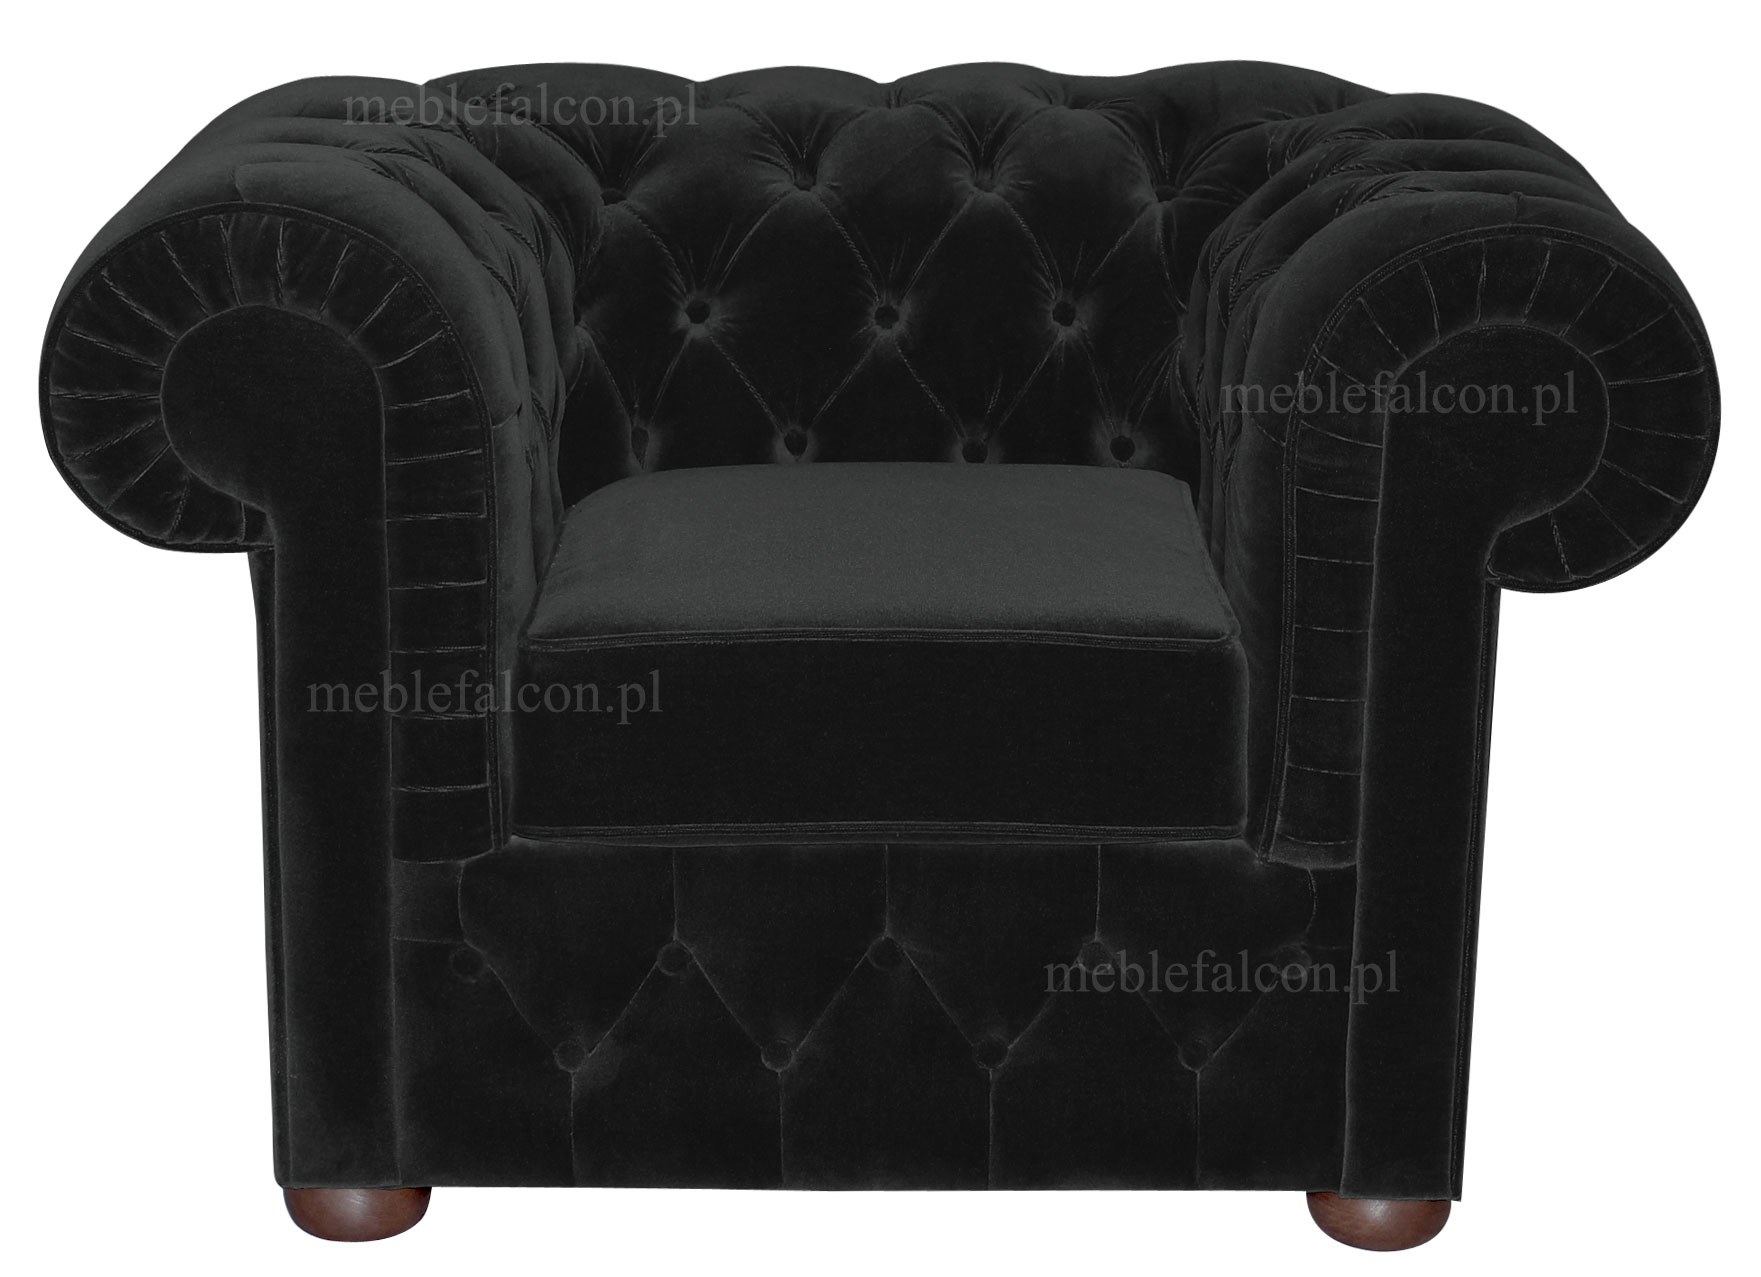 czarny plusz pikowany fotel elegancki klasyczny kształt głębokie pikowanie bogate wypełnienie tanio